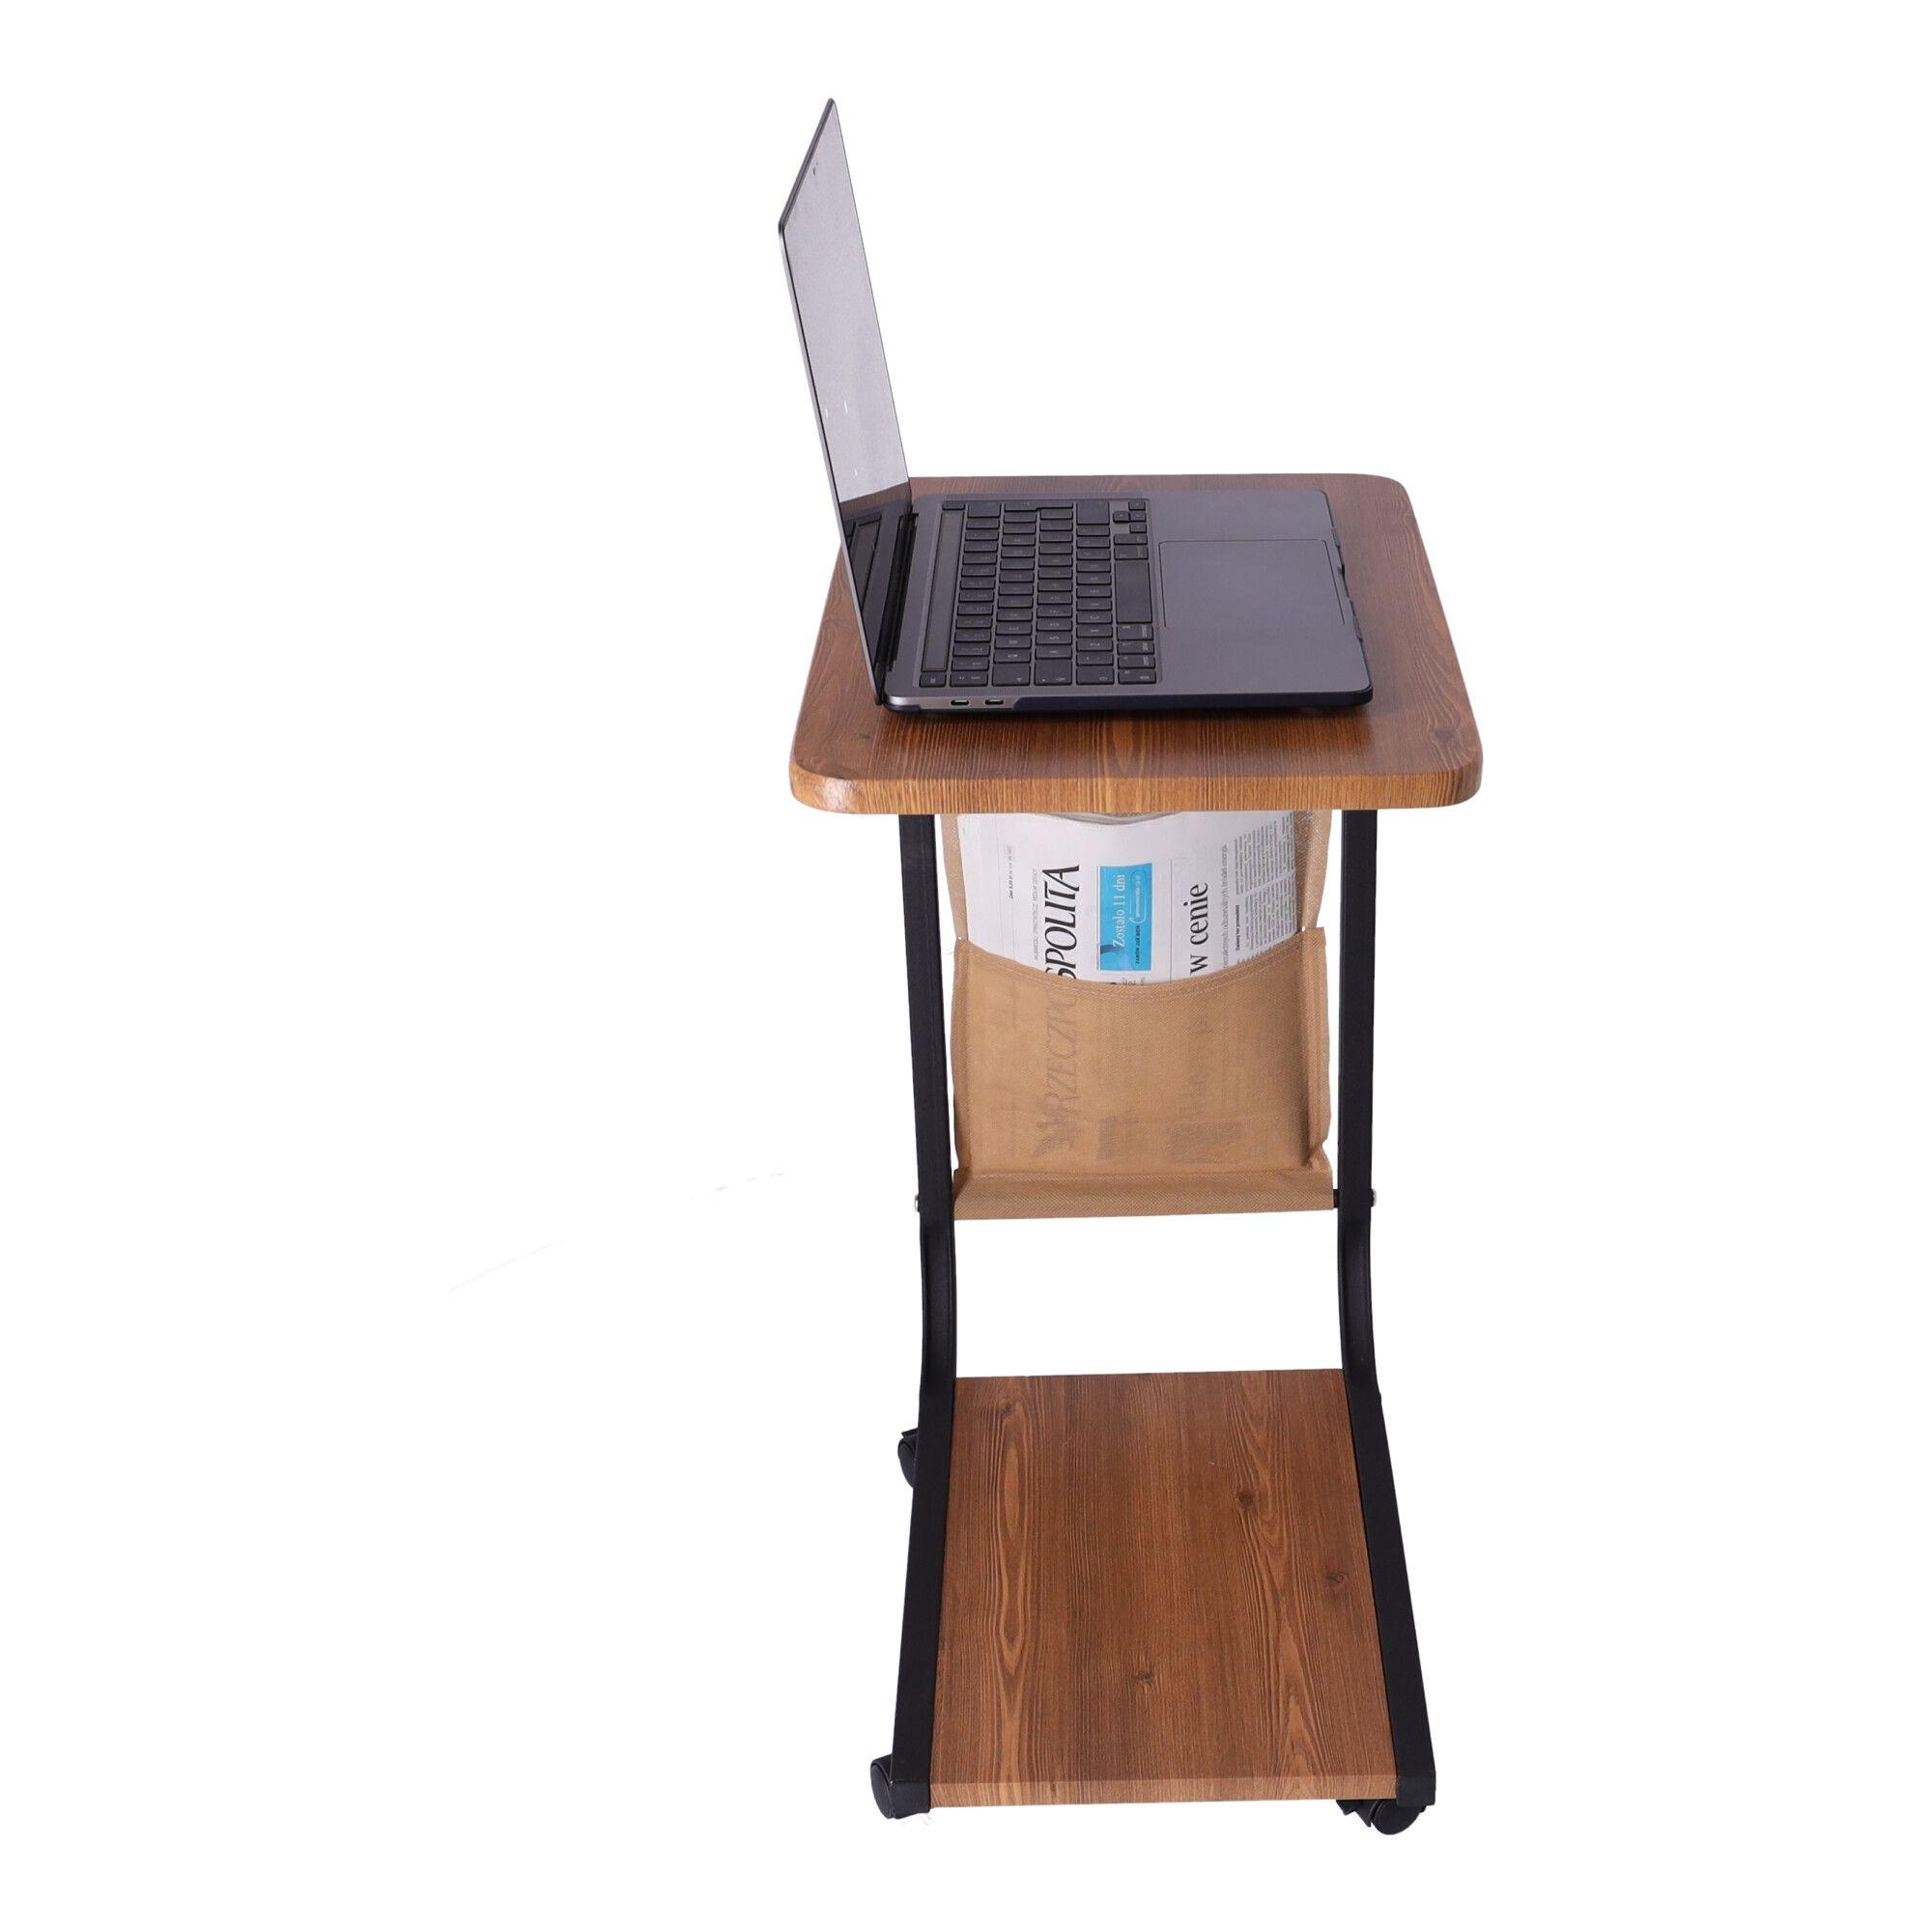 Mobilny stolik kawowy / Stolik kawowy boczny na kółkach - kolor ciemny